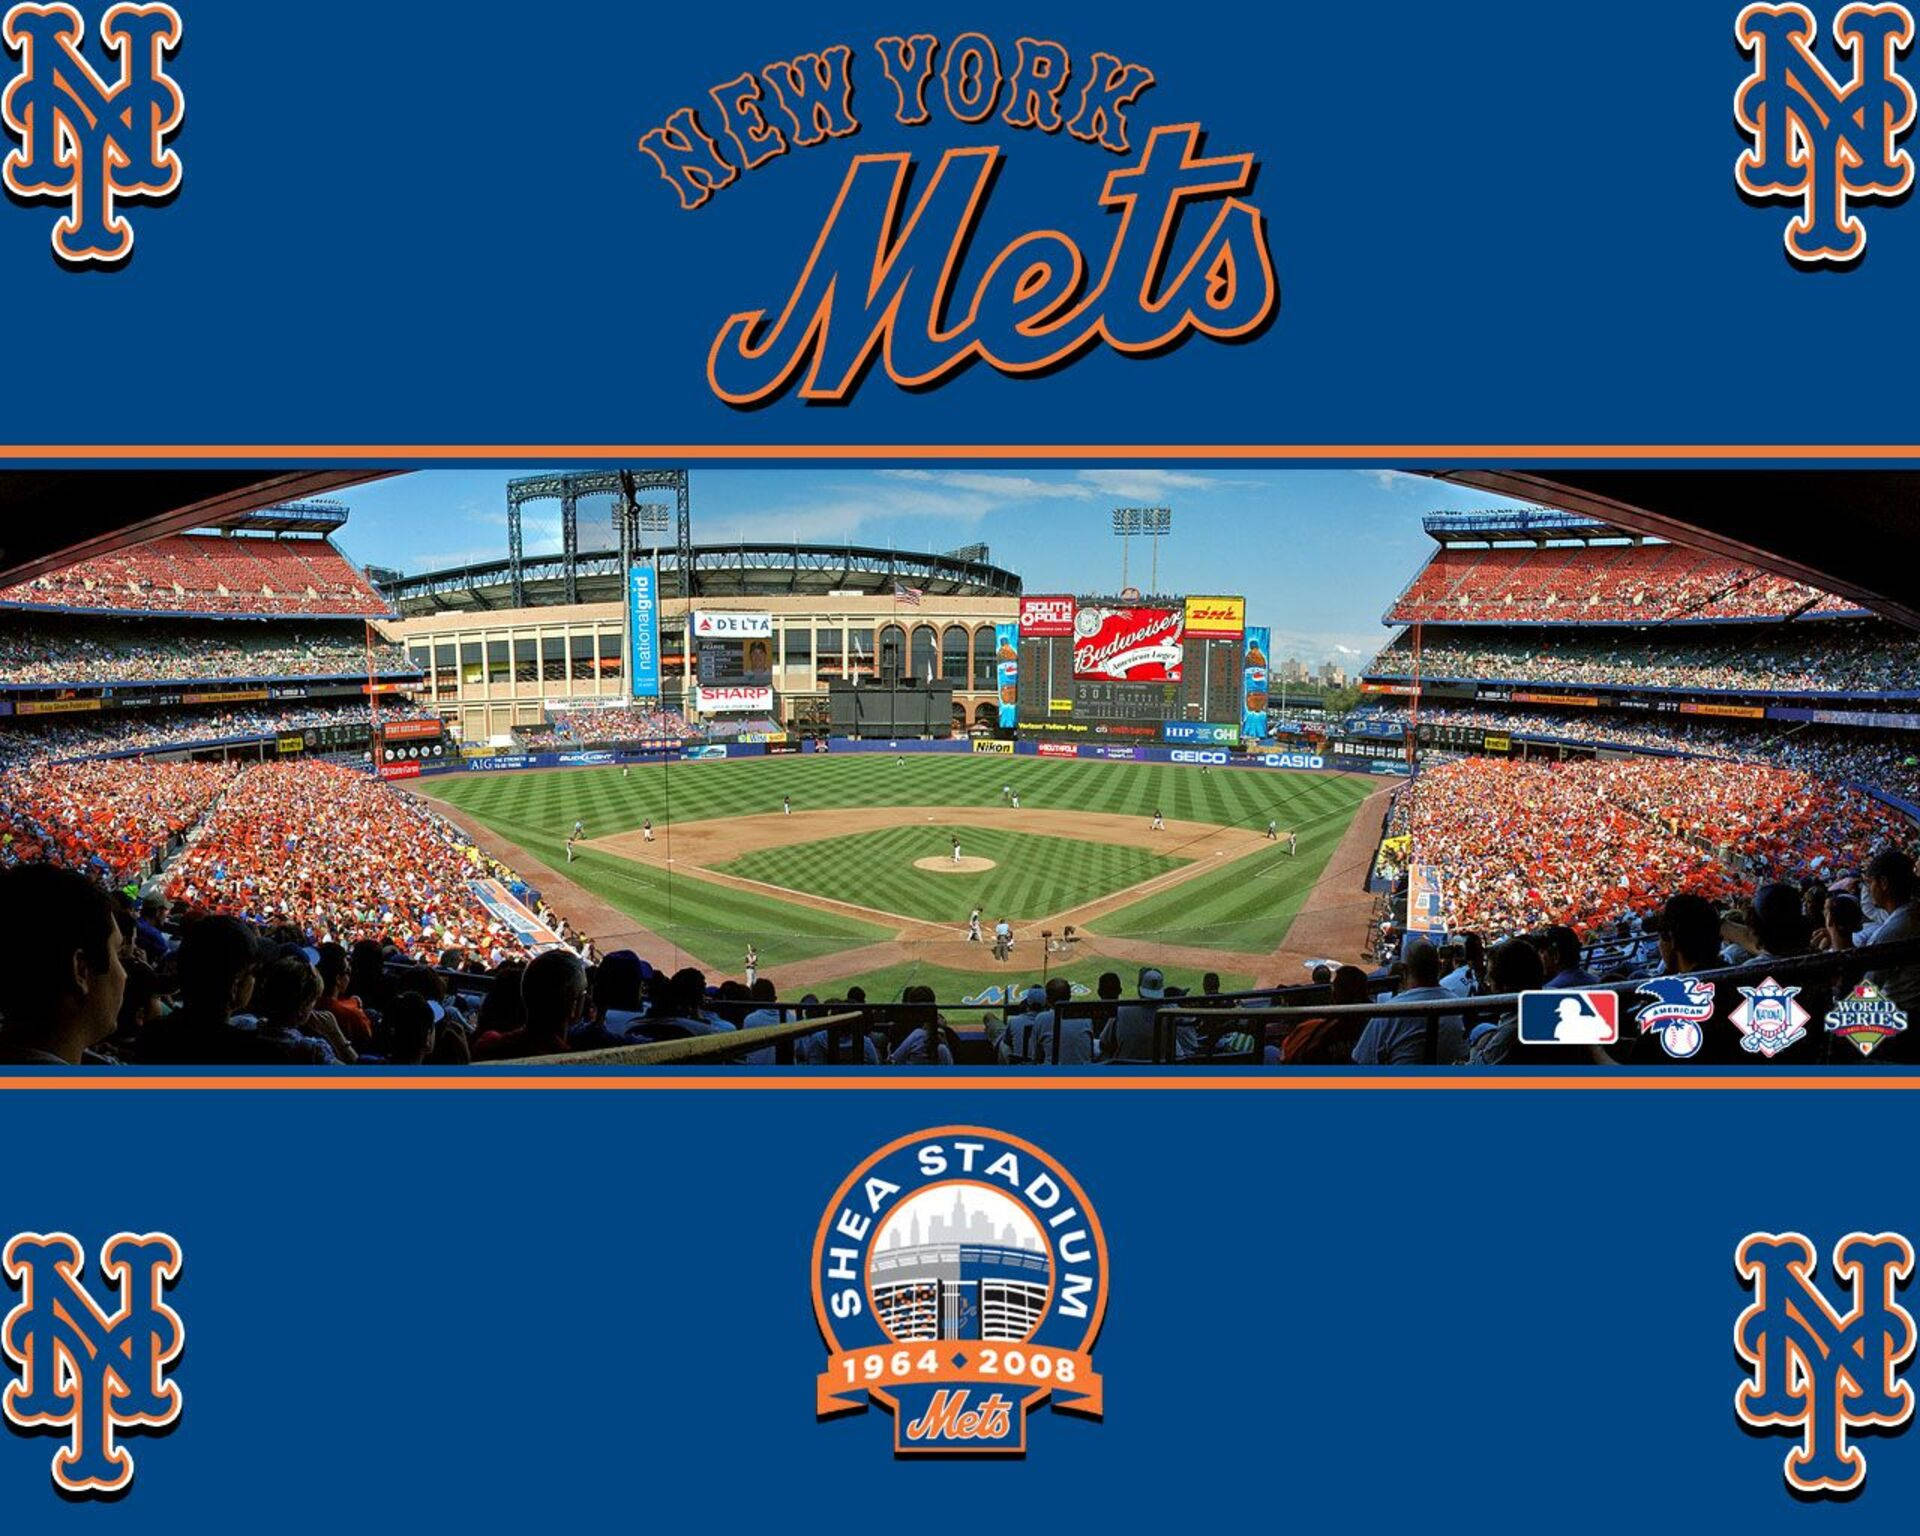 New York Mets Shea Stadium Background